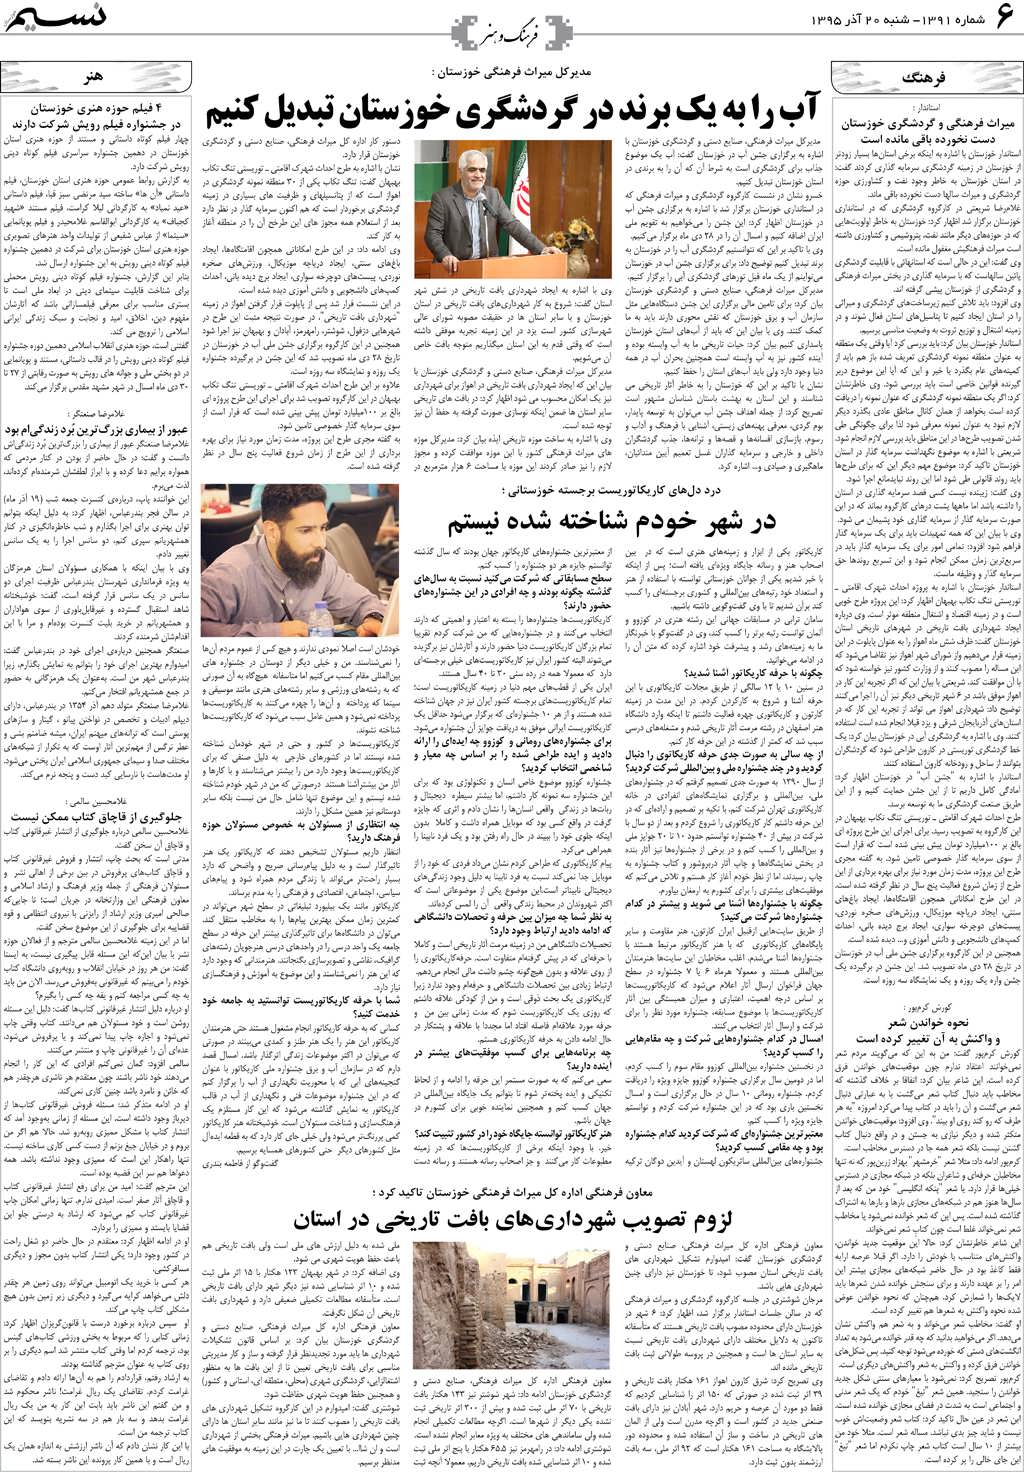 صفحه فرهنگ و هنر روزنامه نسیم شماره 1391